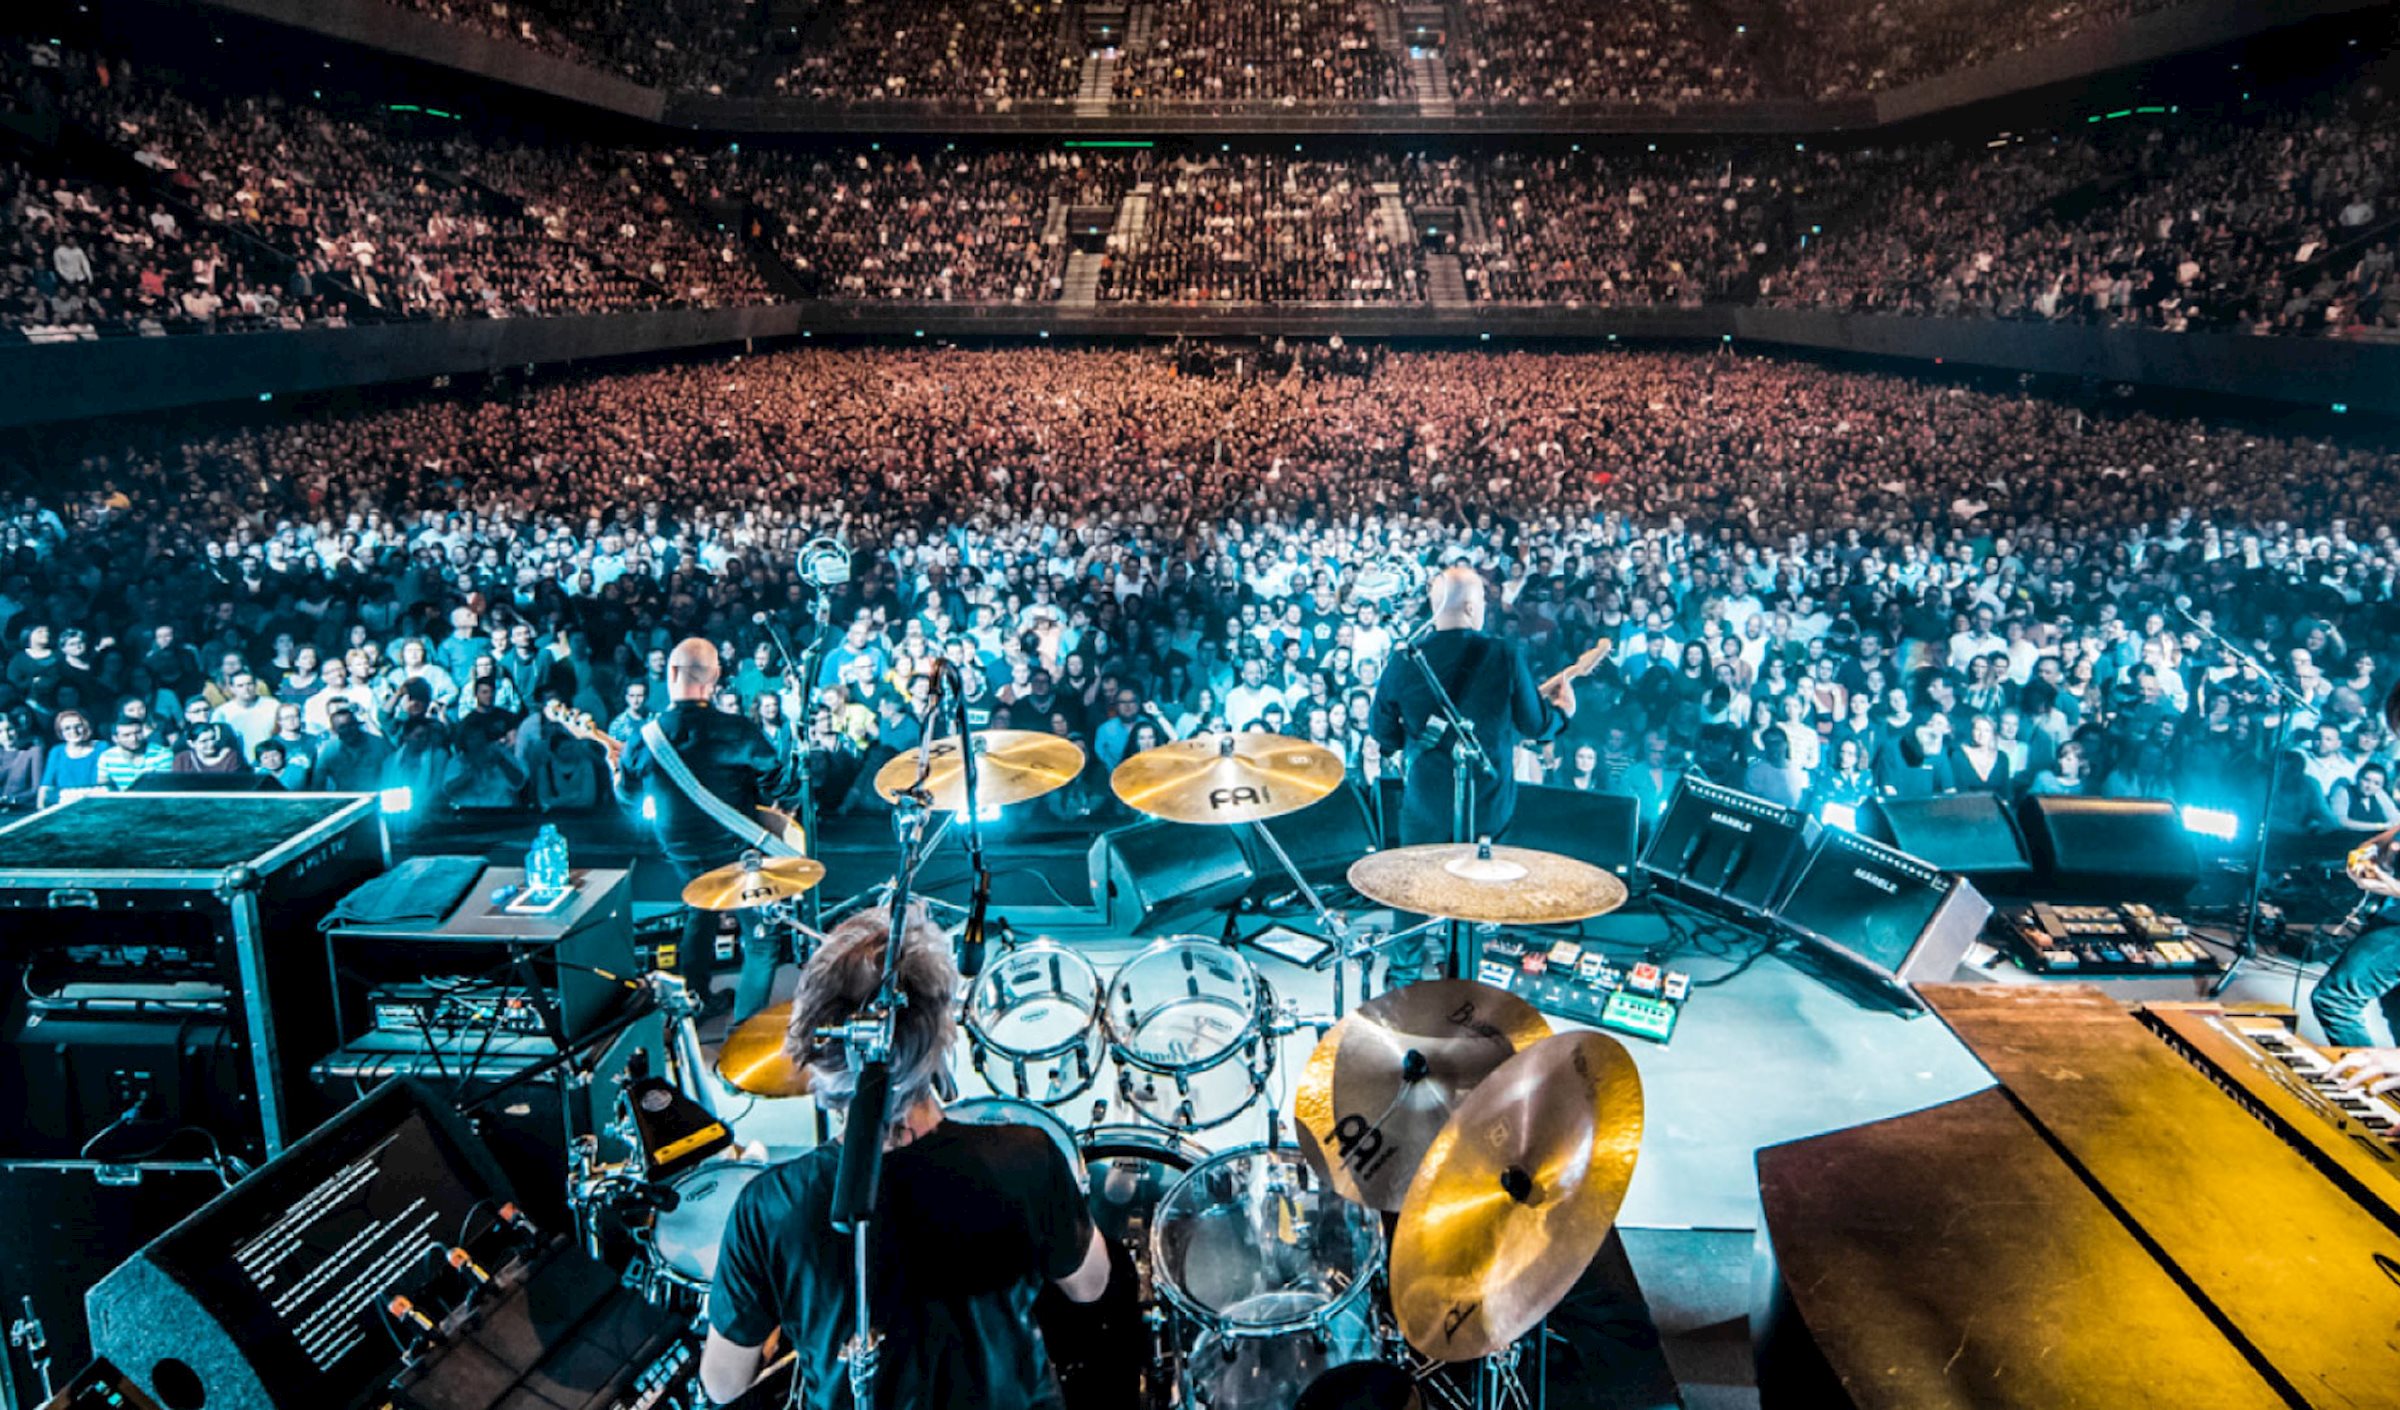 Die legendäre niederländische Rockband BLØF betrat die Bühne im ausverkauften Ziggo Dome in Amsterdam. 17.000 Fans hatten sich zu einer spektakulären Show voller Überraschungen versammelt, die von PRG bereitgestellt wurde.